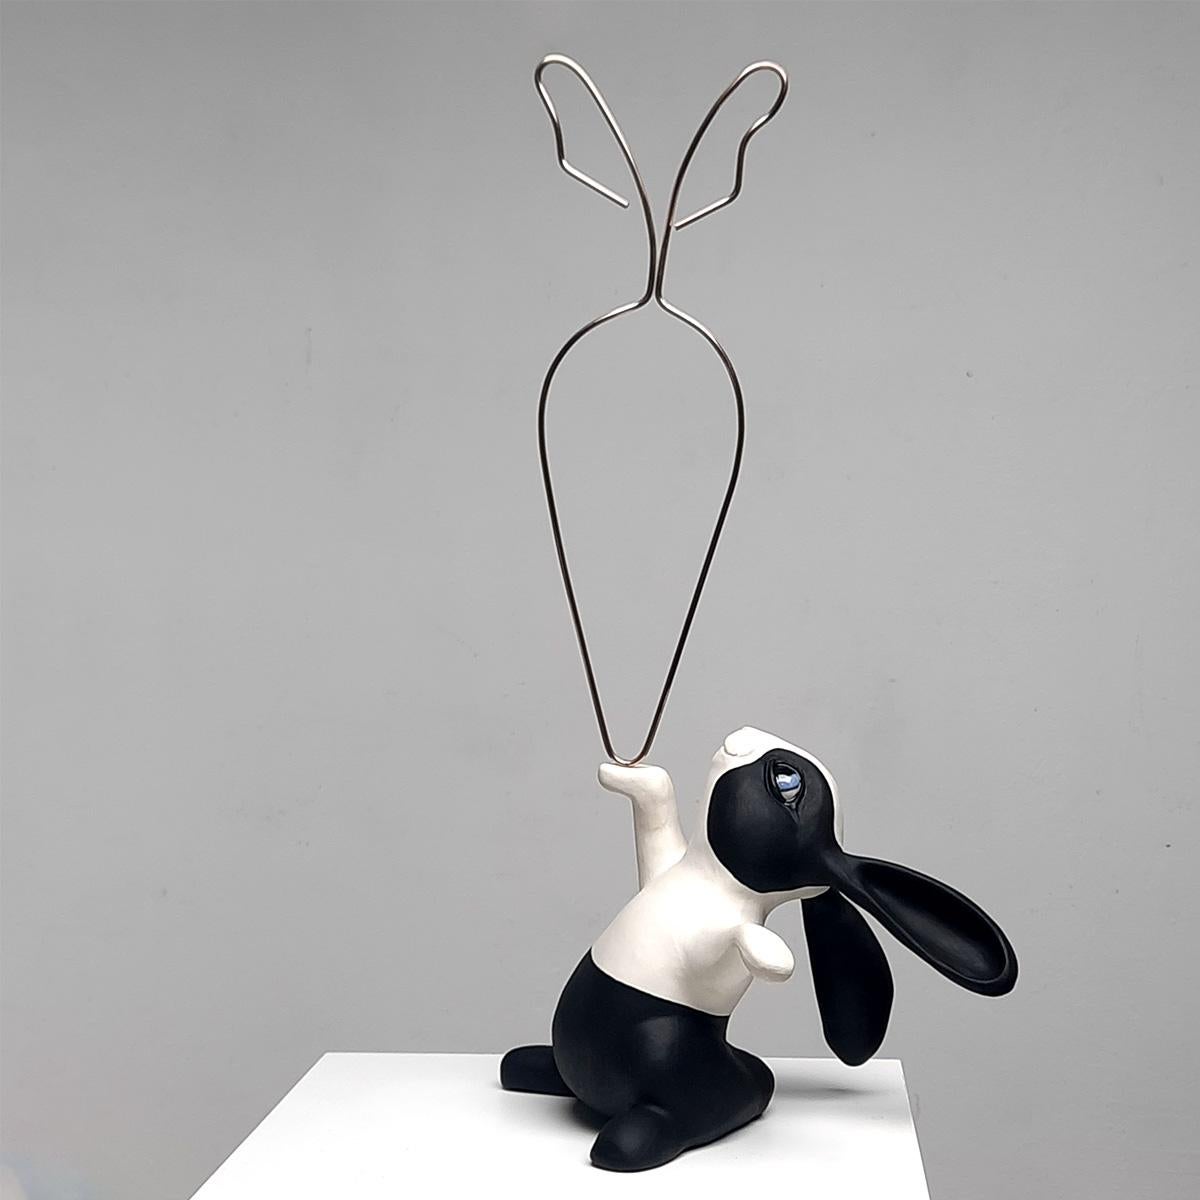 24 Carrot Gold-originelle realistische Skulptur aus der Tierwelt-Kunstwerk-zeitgenössische Kunst (Moderne), Sculpture, von Henk Jan Sanderman